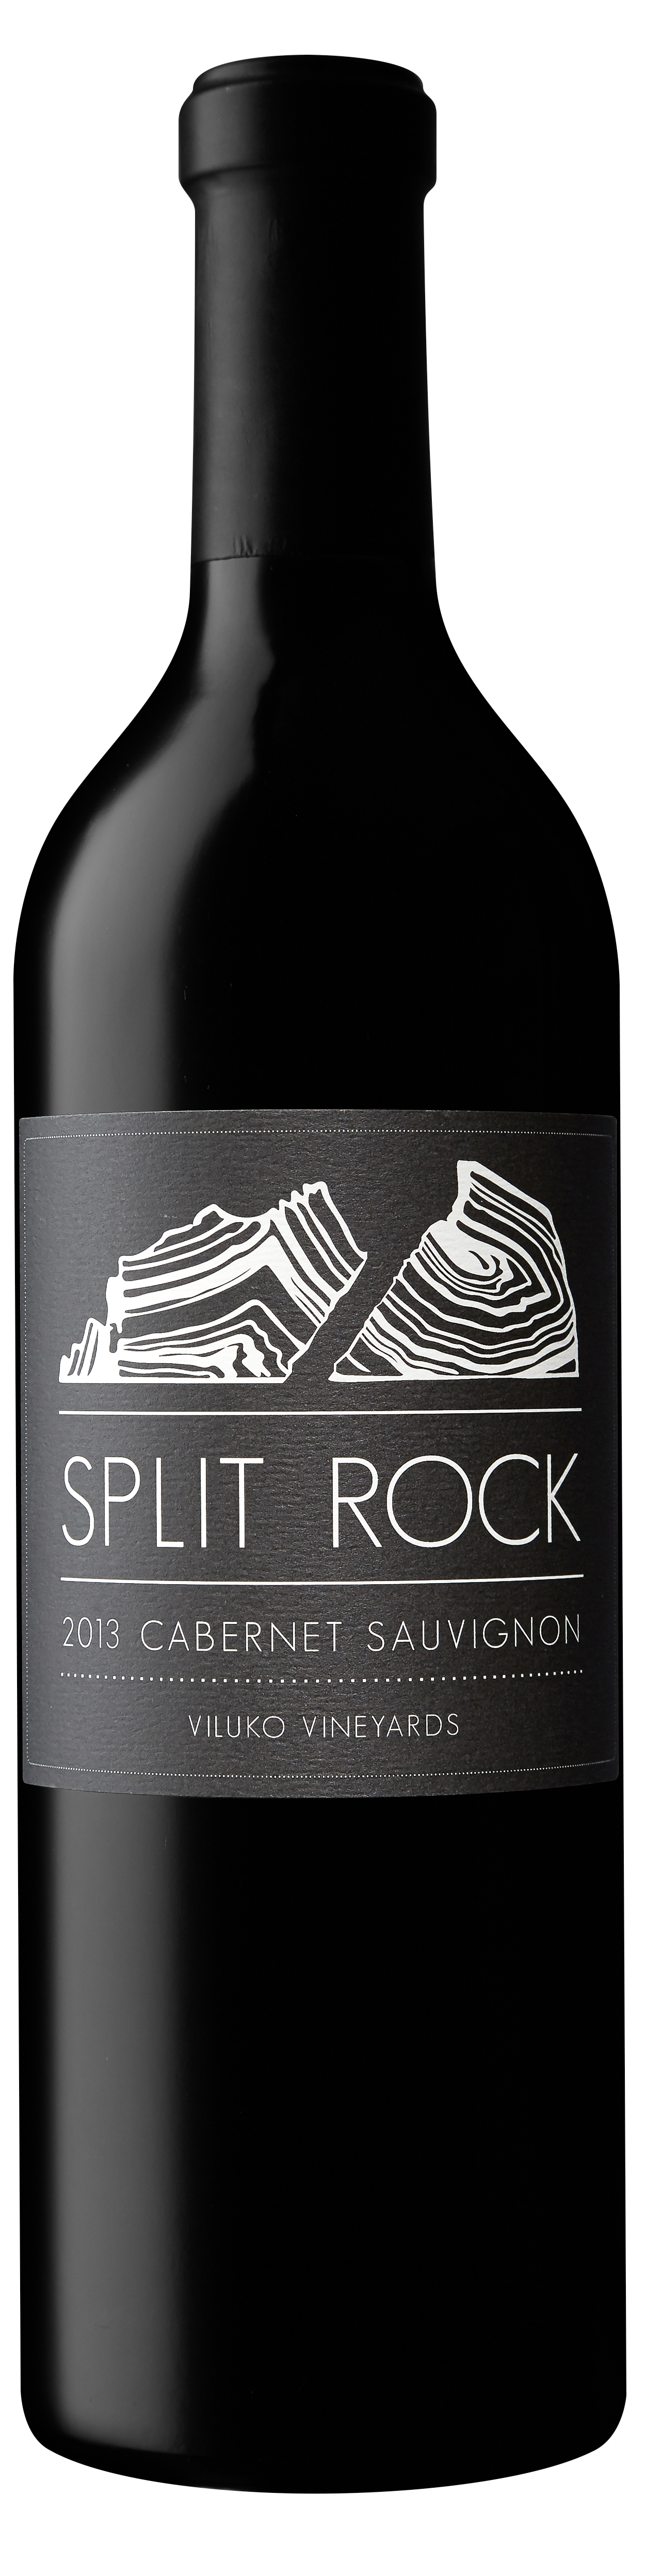 Product Image for 2013 Split Rock Cabernet Sauvignon